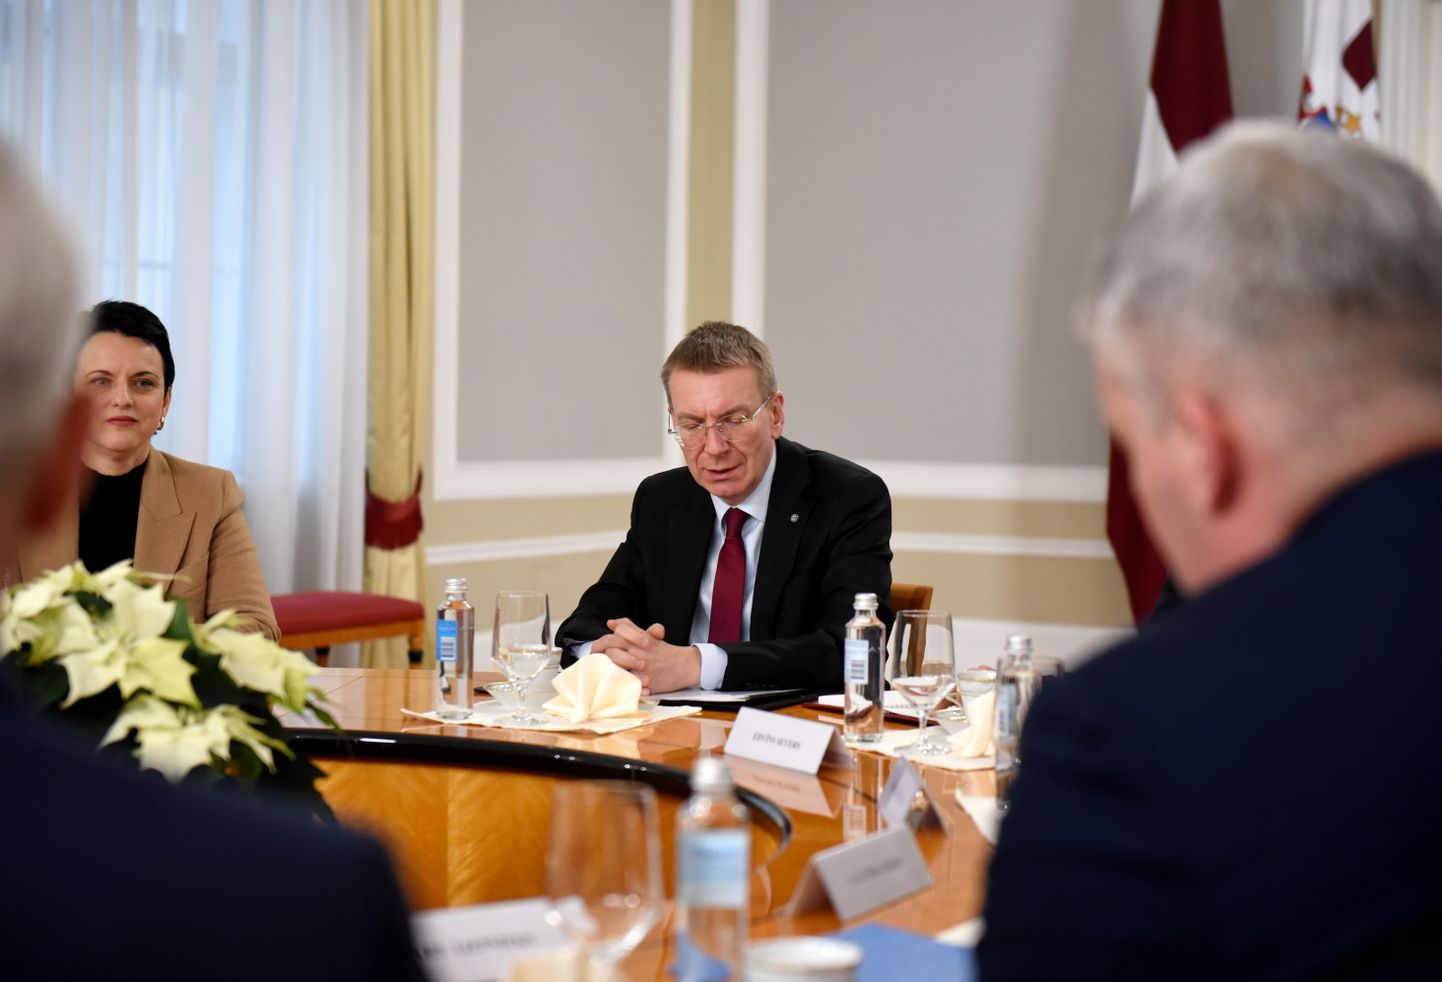 Valsts prezidenta kancelejas vadītāja Gunda Reire un Valsts prezidents Edgars Rinkēvičs tikšanās laikā ar Valsts augstākajām amatpersonām Rīgas pilī.